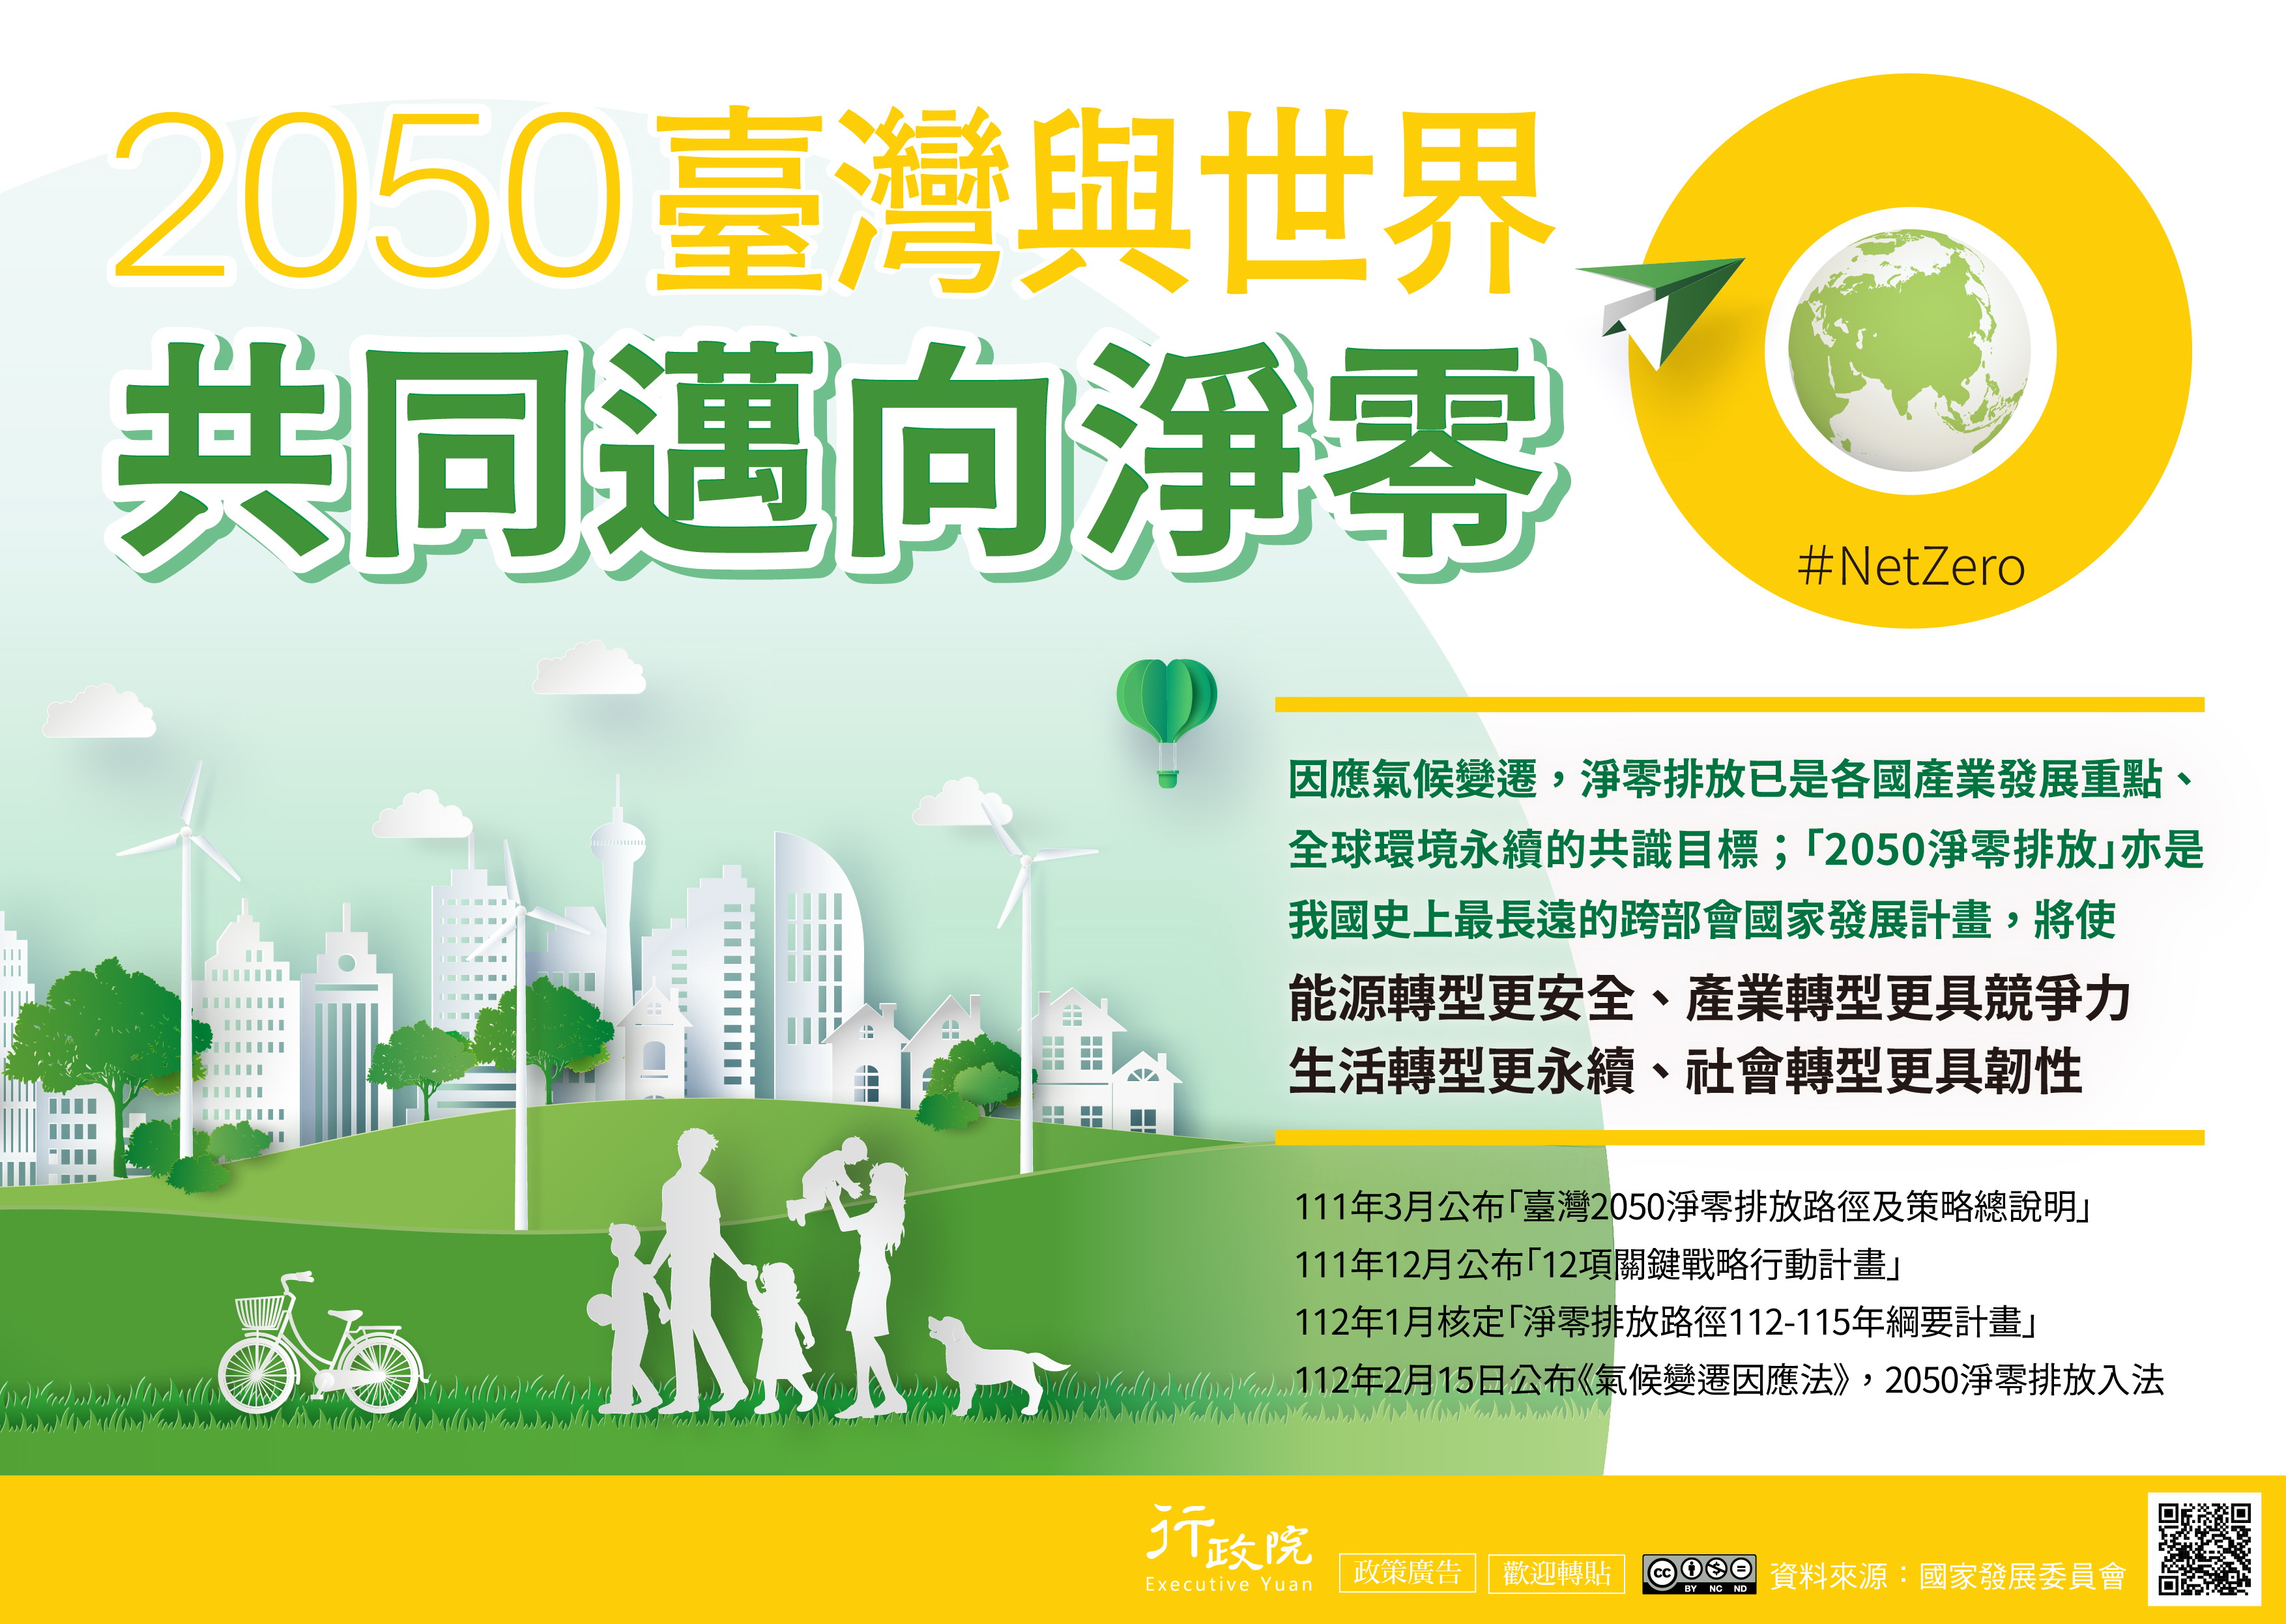 2050臺灣與世界共同邁向淨零